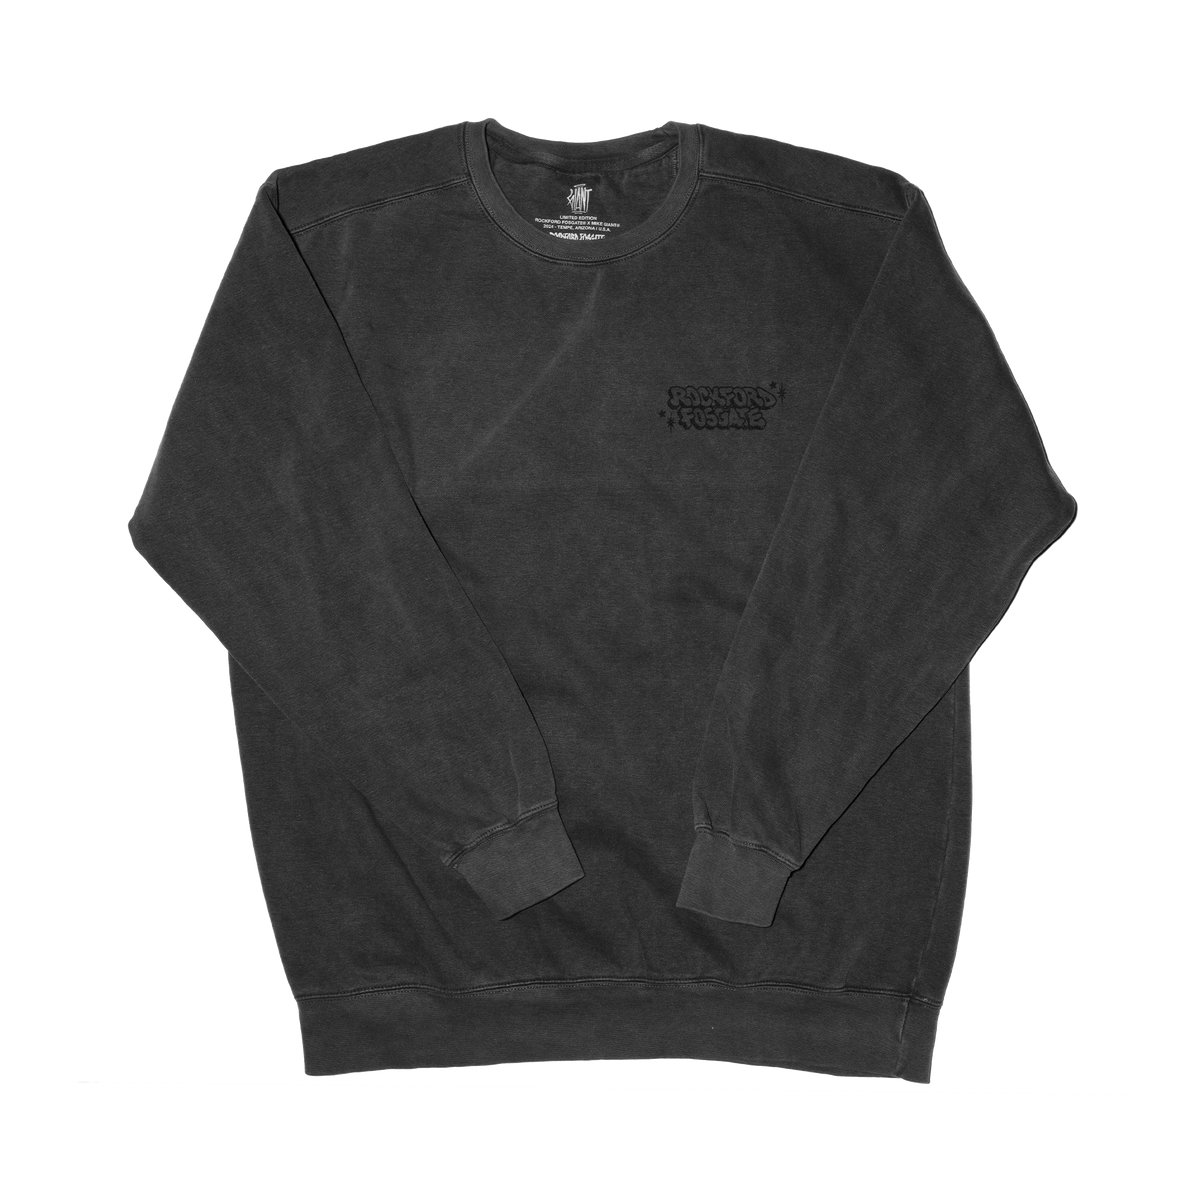 Mike Giant x Rockford Fosgate Sweatshirt: 2XL(POP-GIANTSS-XXL)